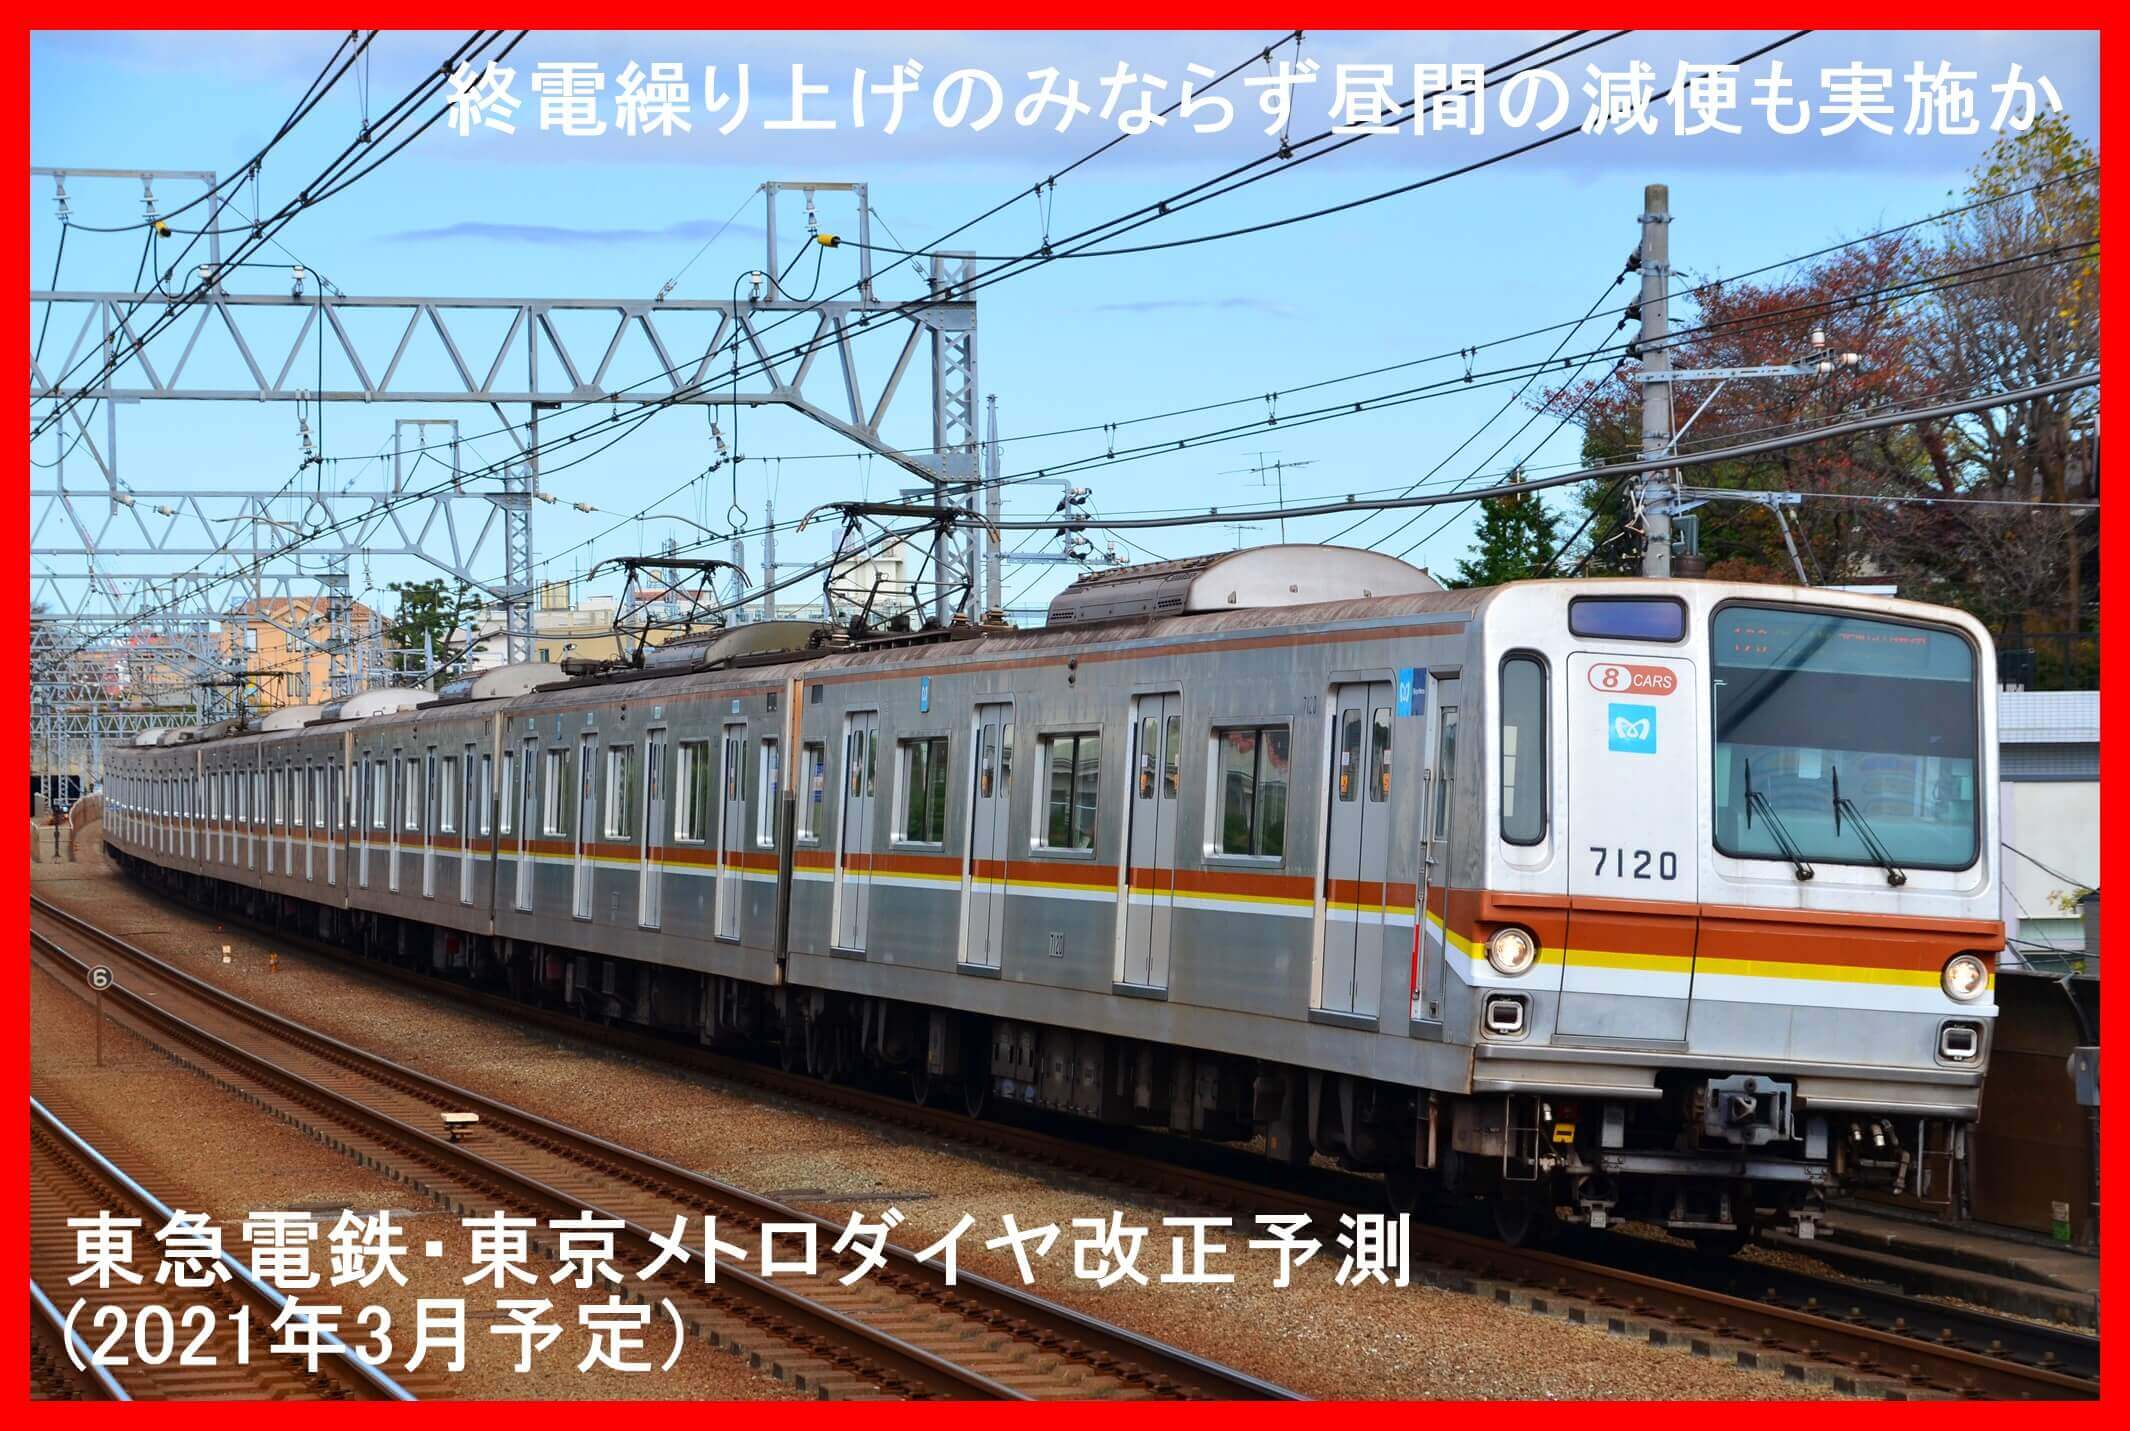 終電繰り上げのみならず昼間の減便も実施か　東急電鉄・東京メトロダイヤ改正予測(2021年3月予定)